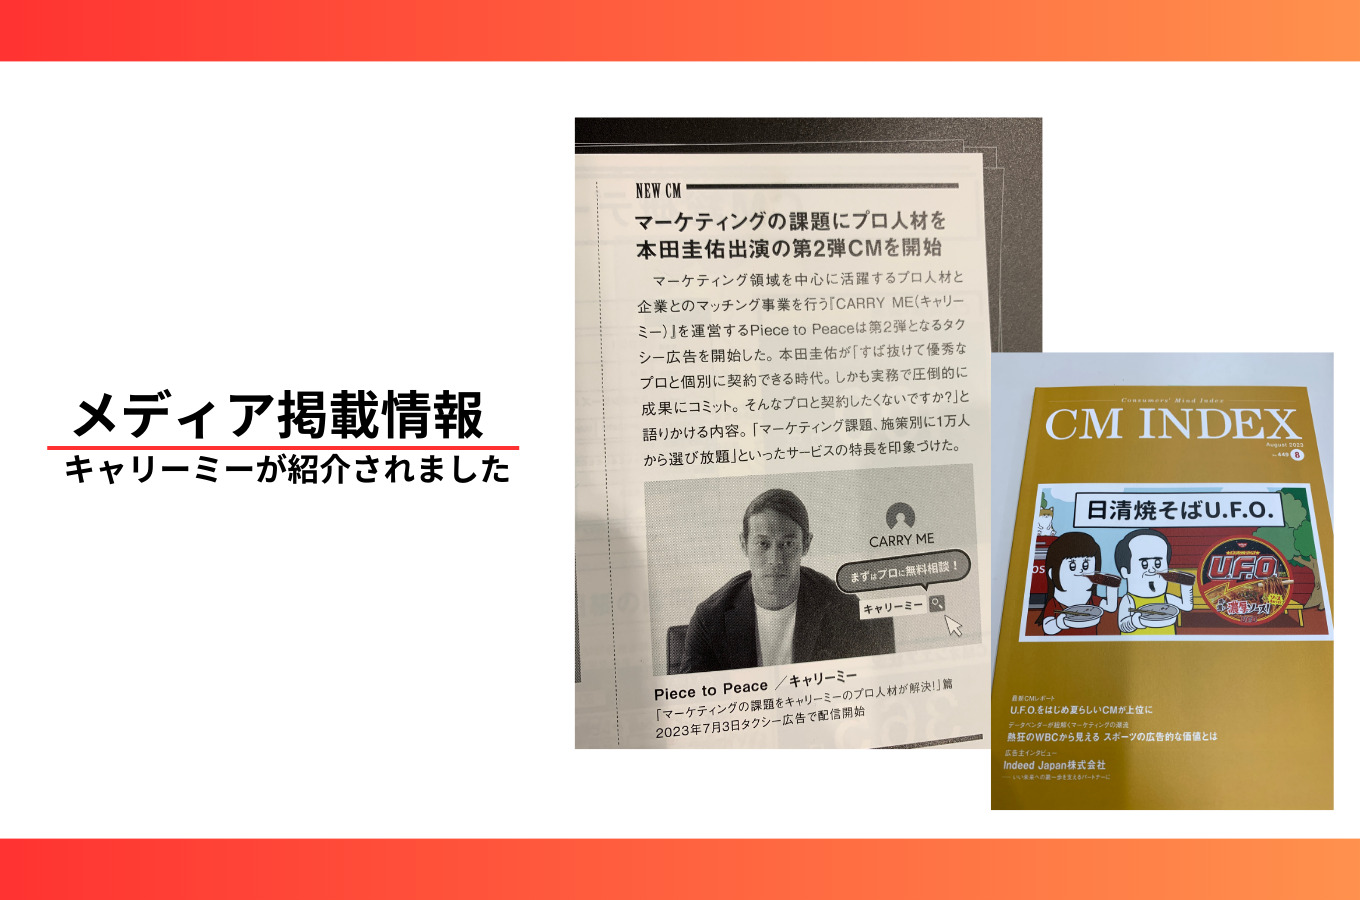 【掲載情報】キャリーミーのタクシーCMが雑誌『CM INDEX』8月号に掲載されました。